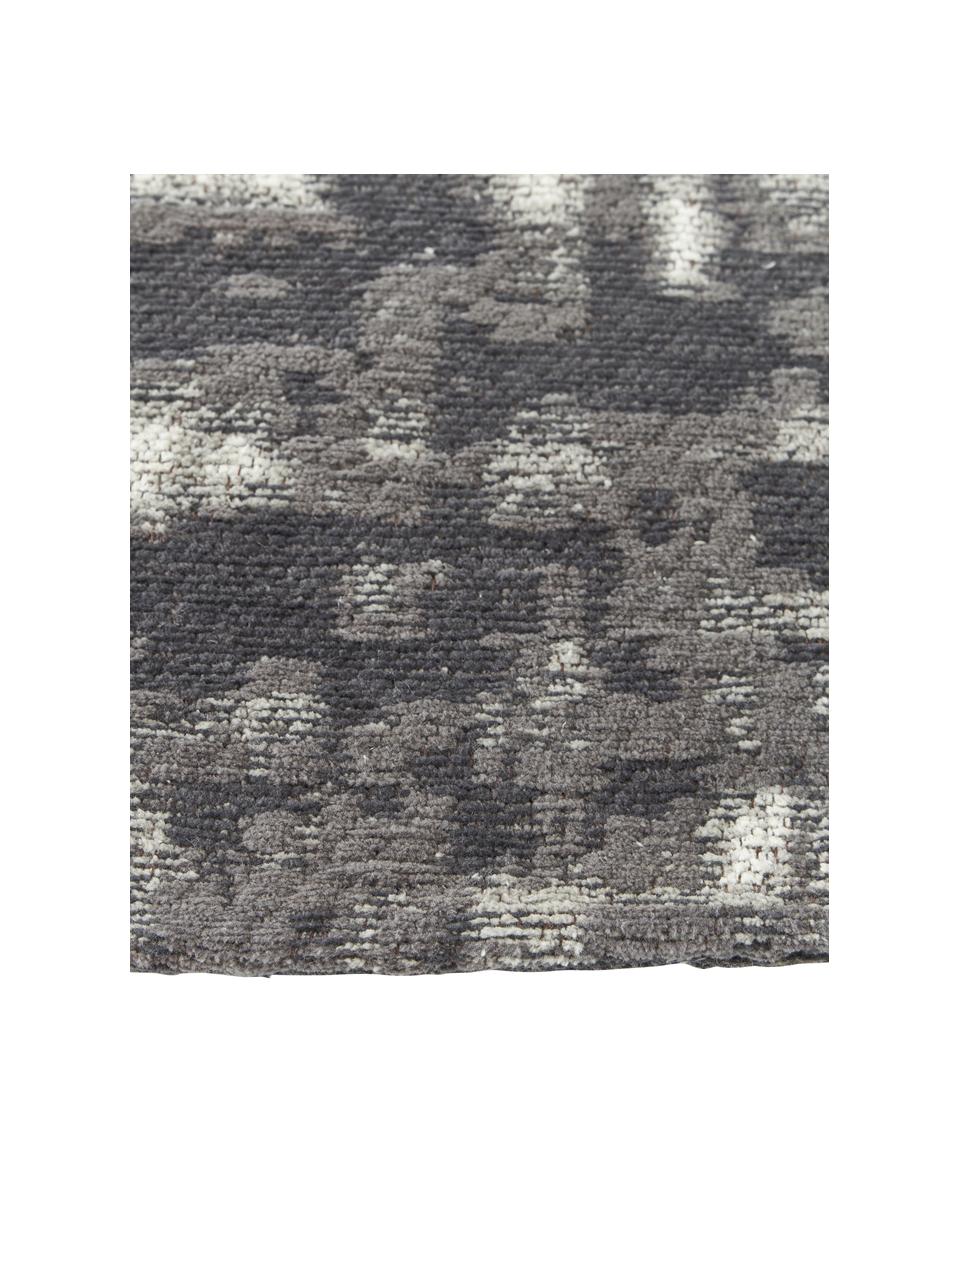 Tappeto rotondo vintage in cotone tessuto a mano Luise, Retro: 100% cotone, Tonalità grigie e bianche, Ø 120 cm (taglia S)